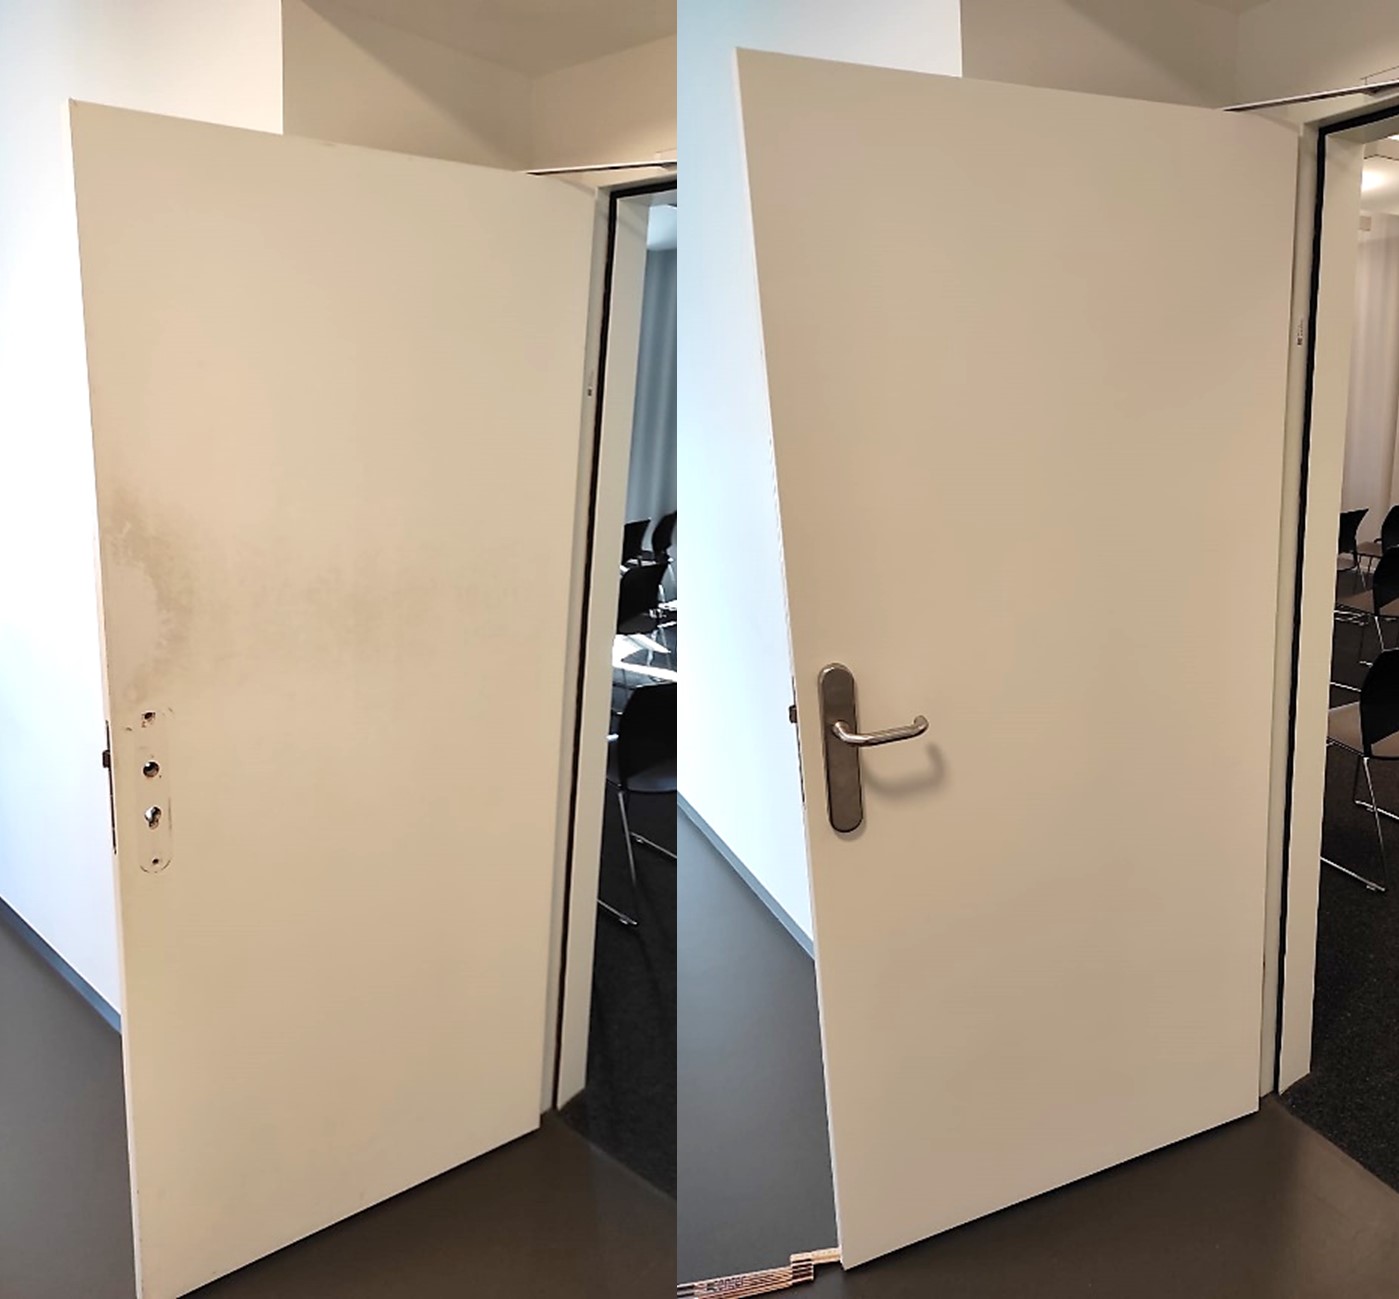 Kantenschutz für Zimmertüren, Kantenschutz